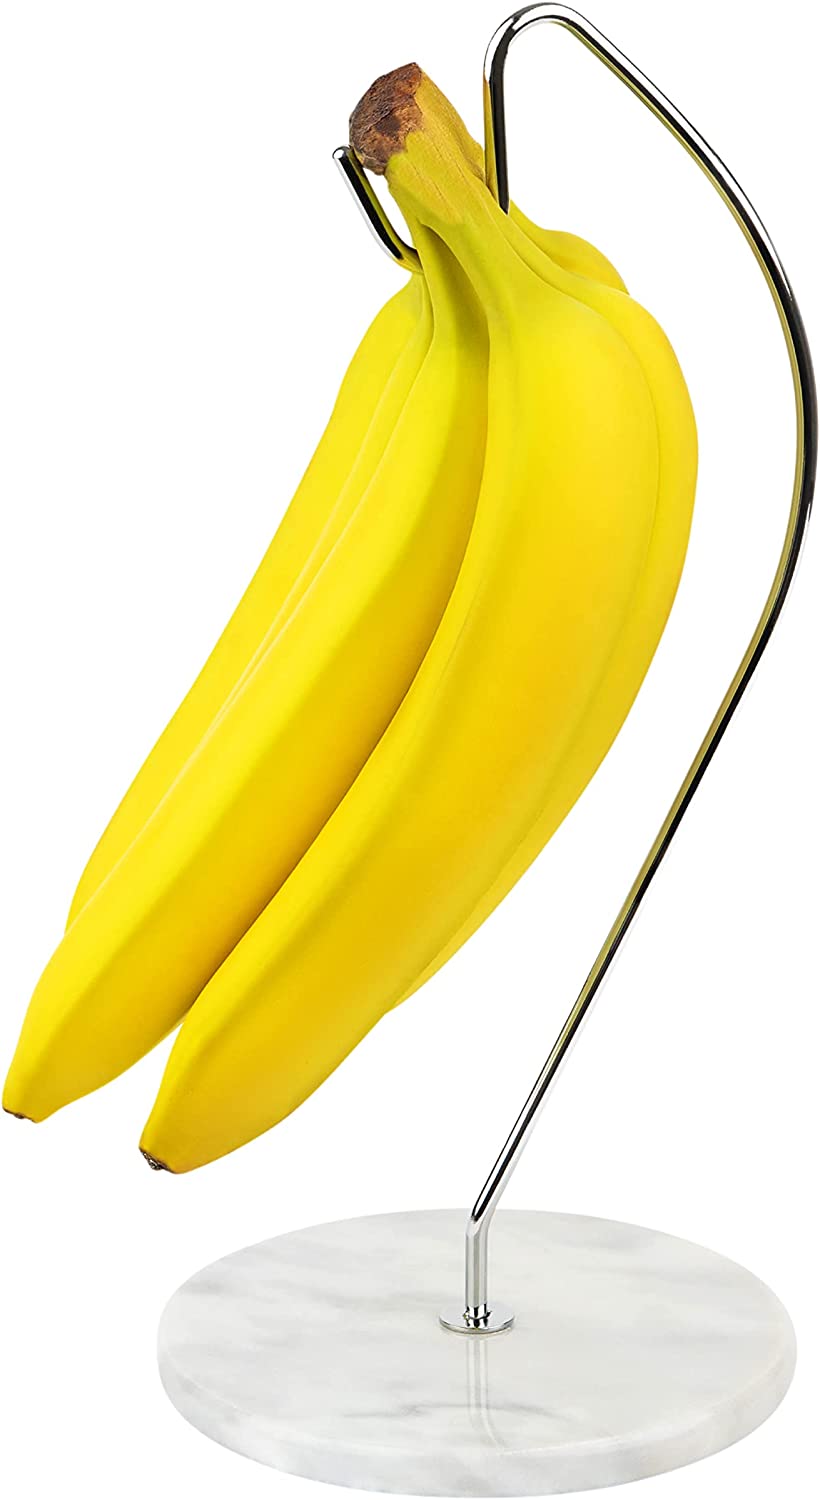 Marble Banana Holder